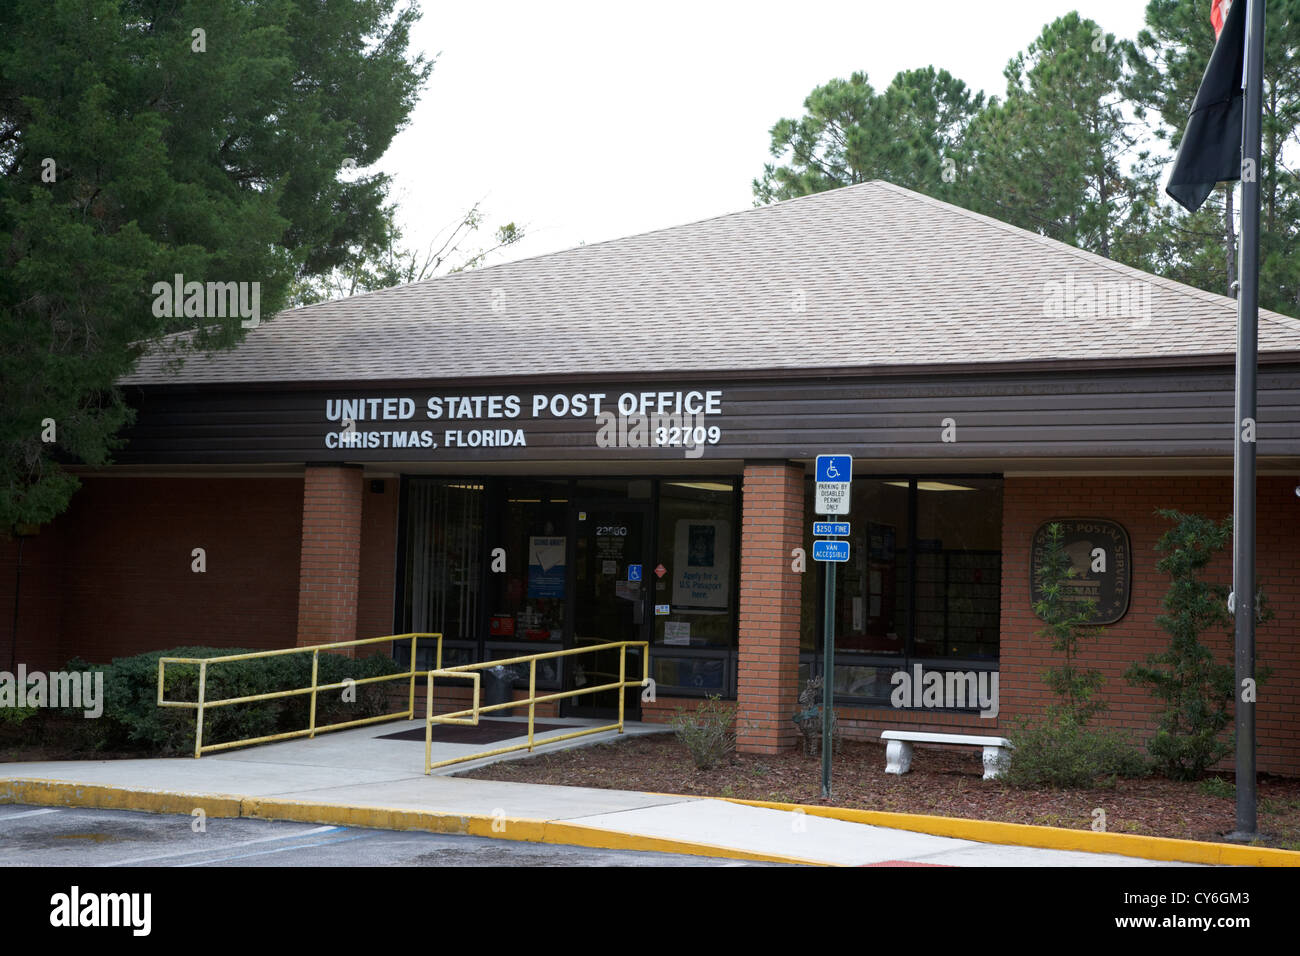 Stati Uniti post office nella città del natale florida usa Foto Stock